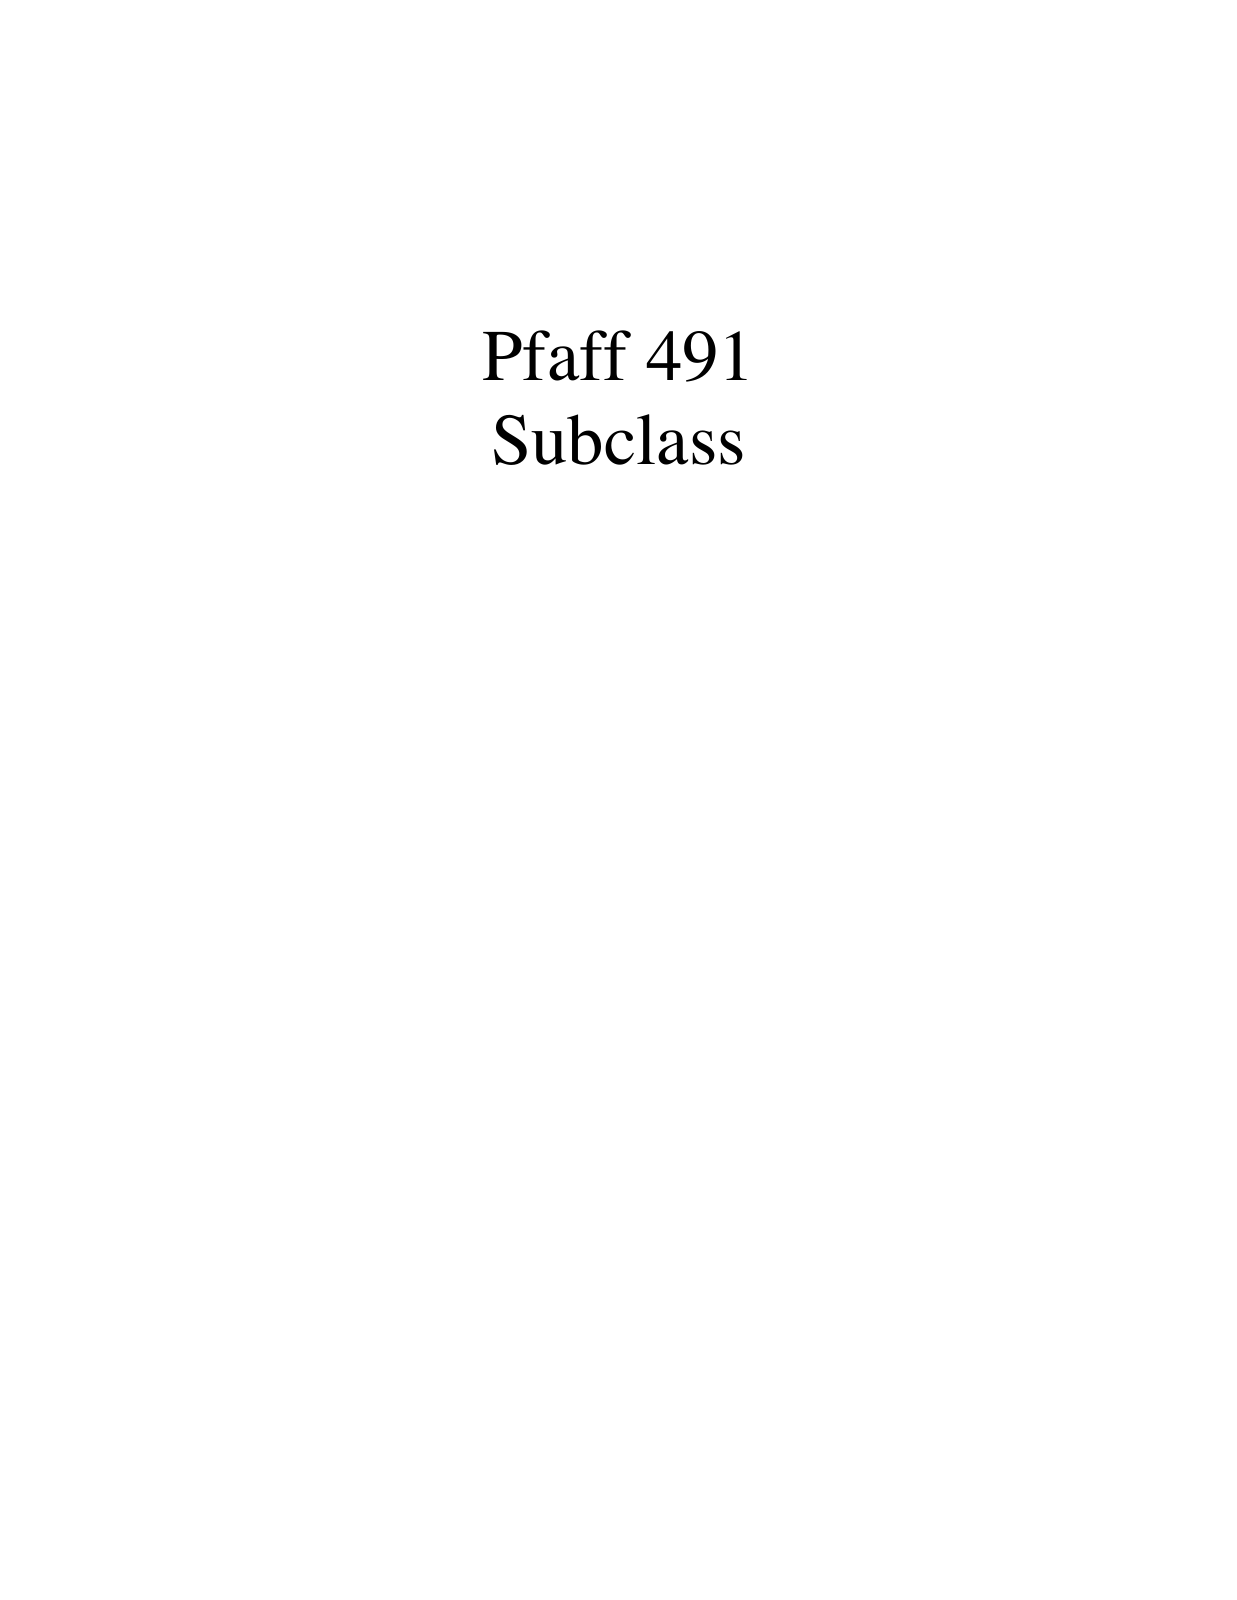 PFAFF 491 Parts List